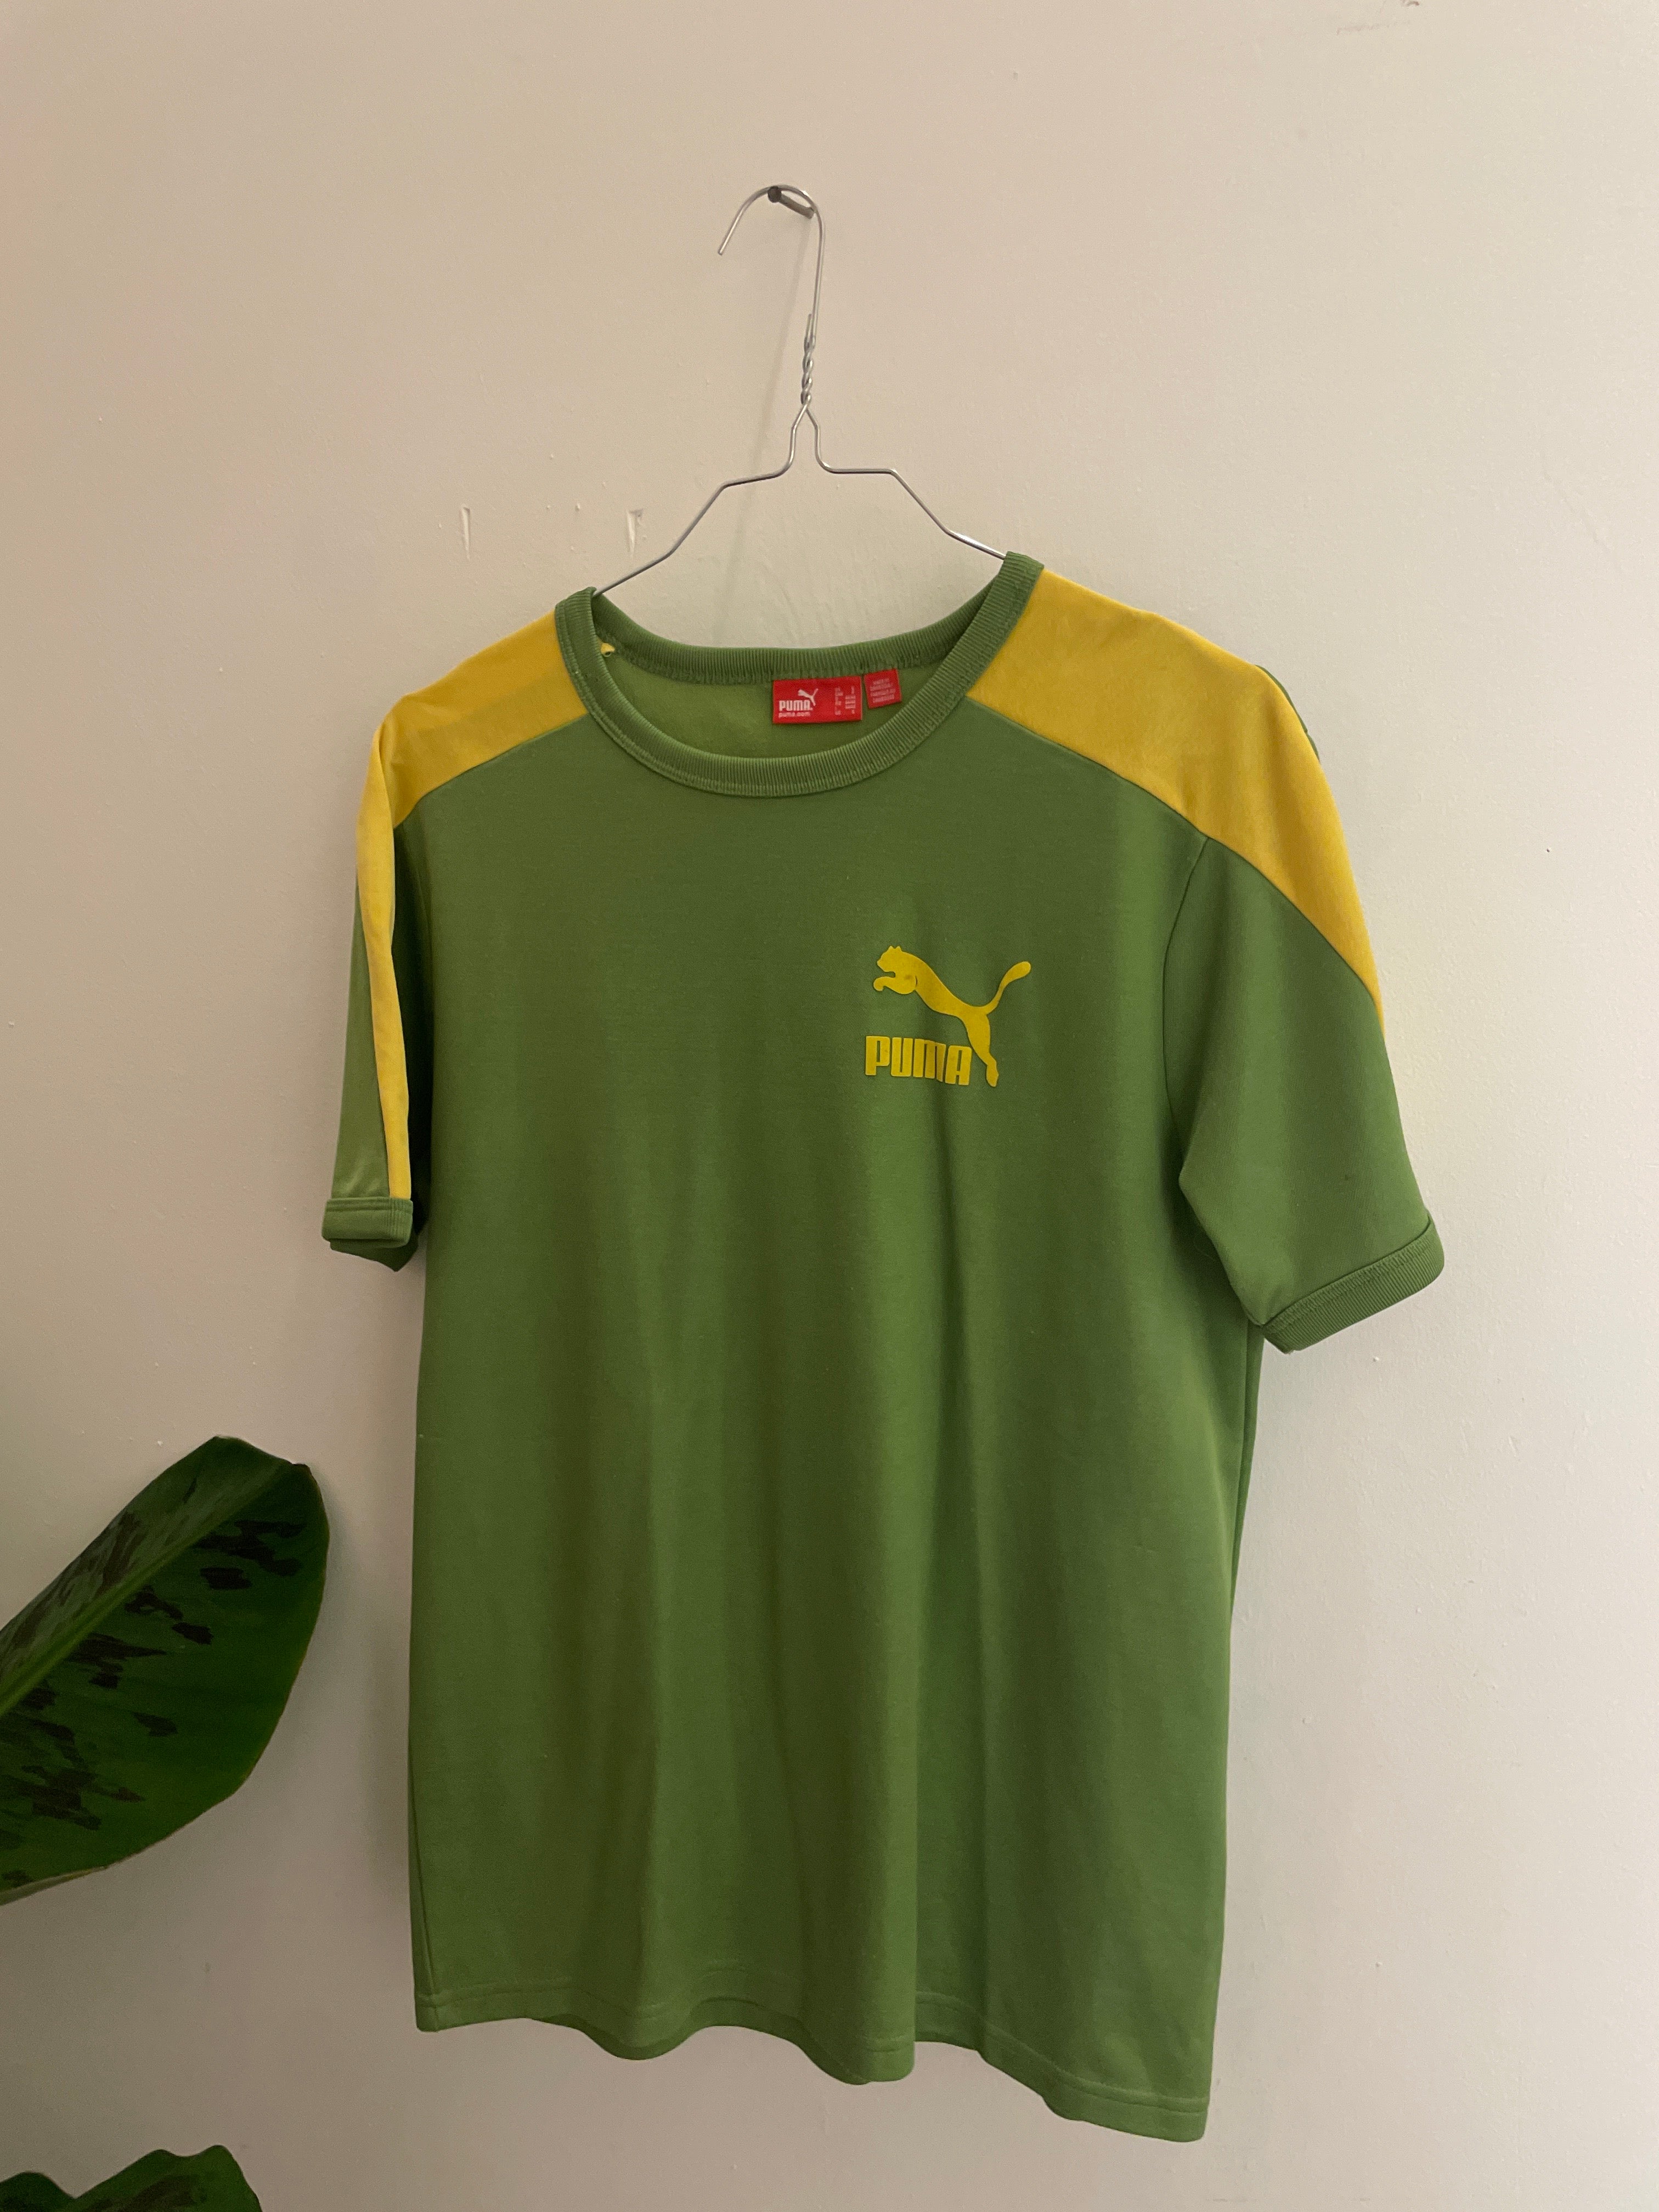 Vintage green puma tshirt size s